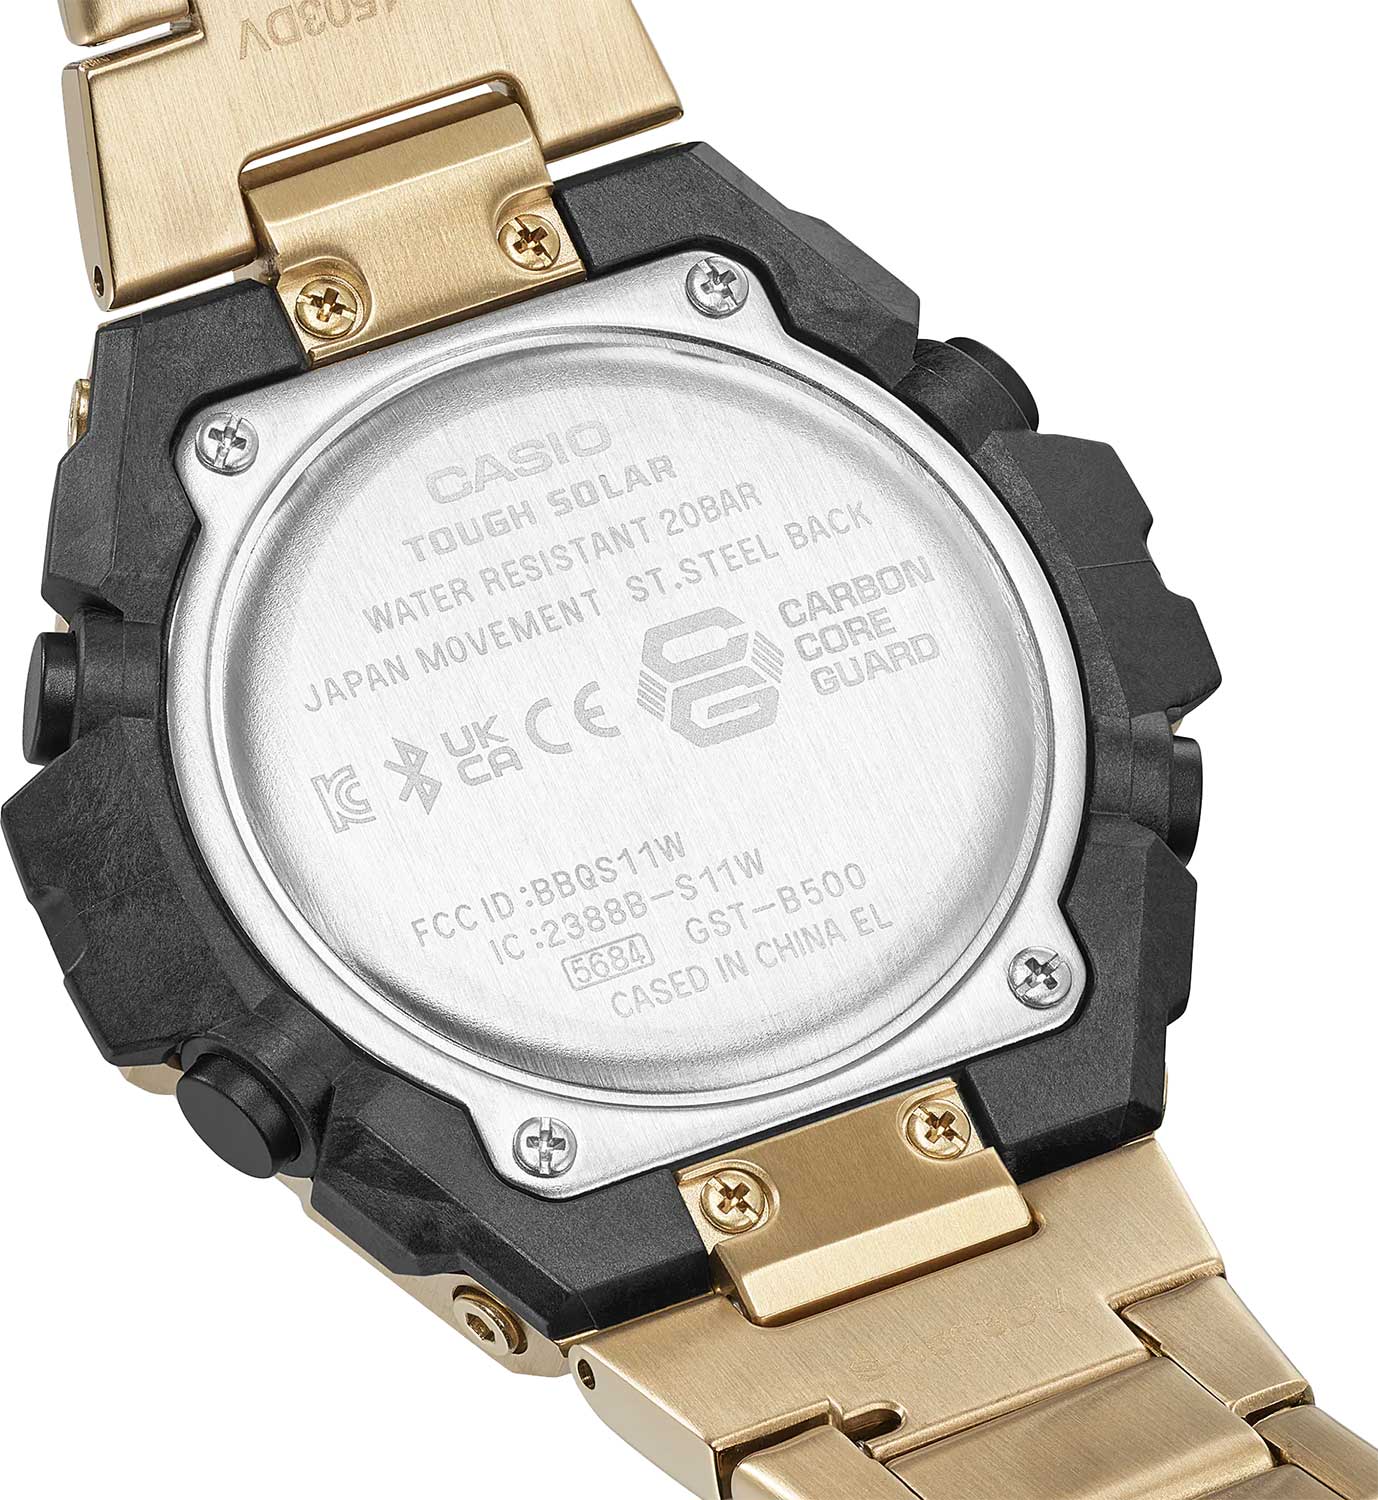  часы CASIO G-SHOCK GST-B500GD-9A